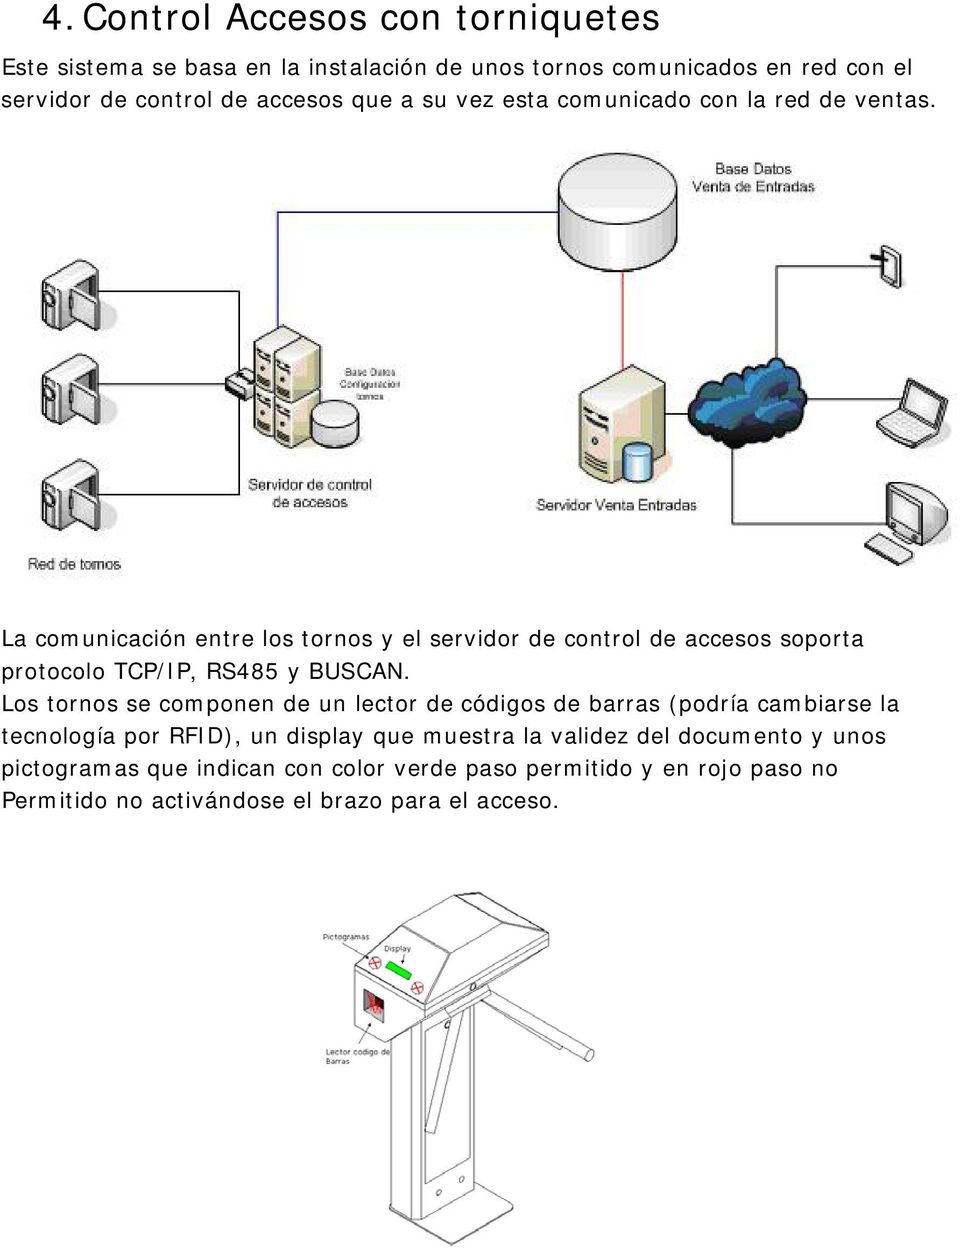 La comunicación entre los tornos y el servidor de control de accesos soporta protocolo TCP/IP, RS485 y BUSCAN.